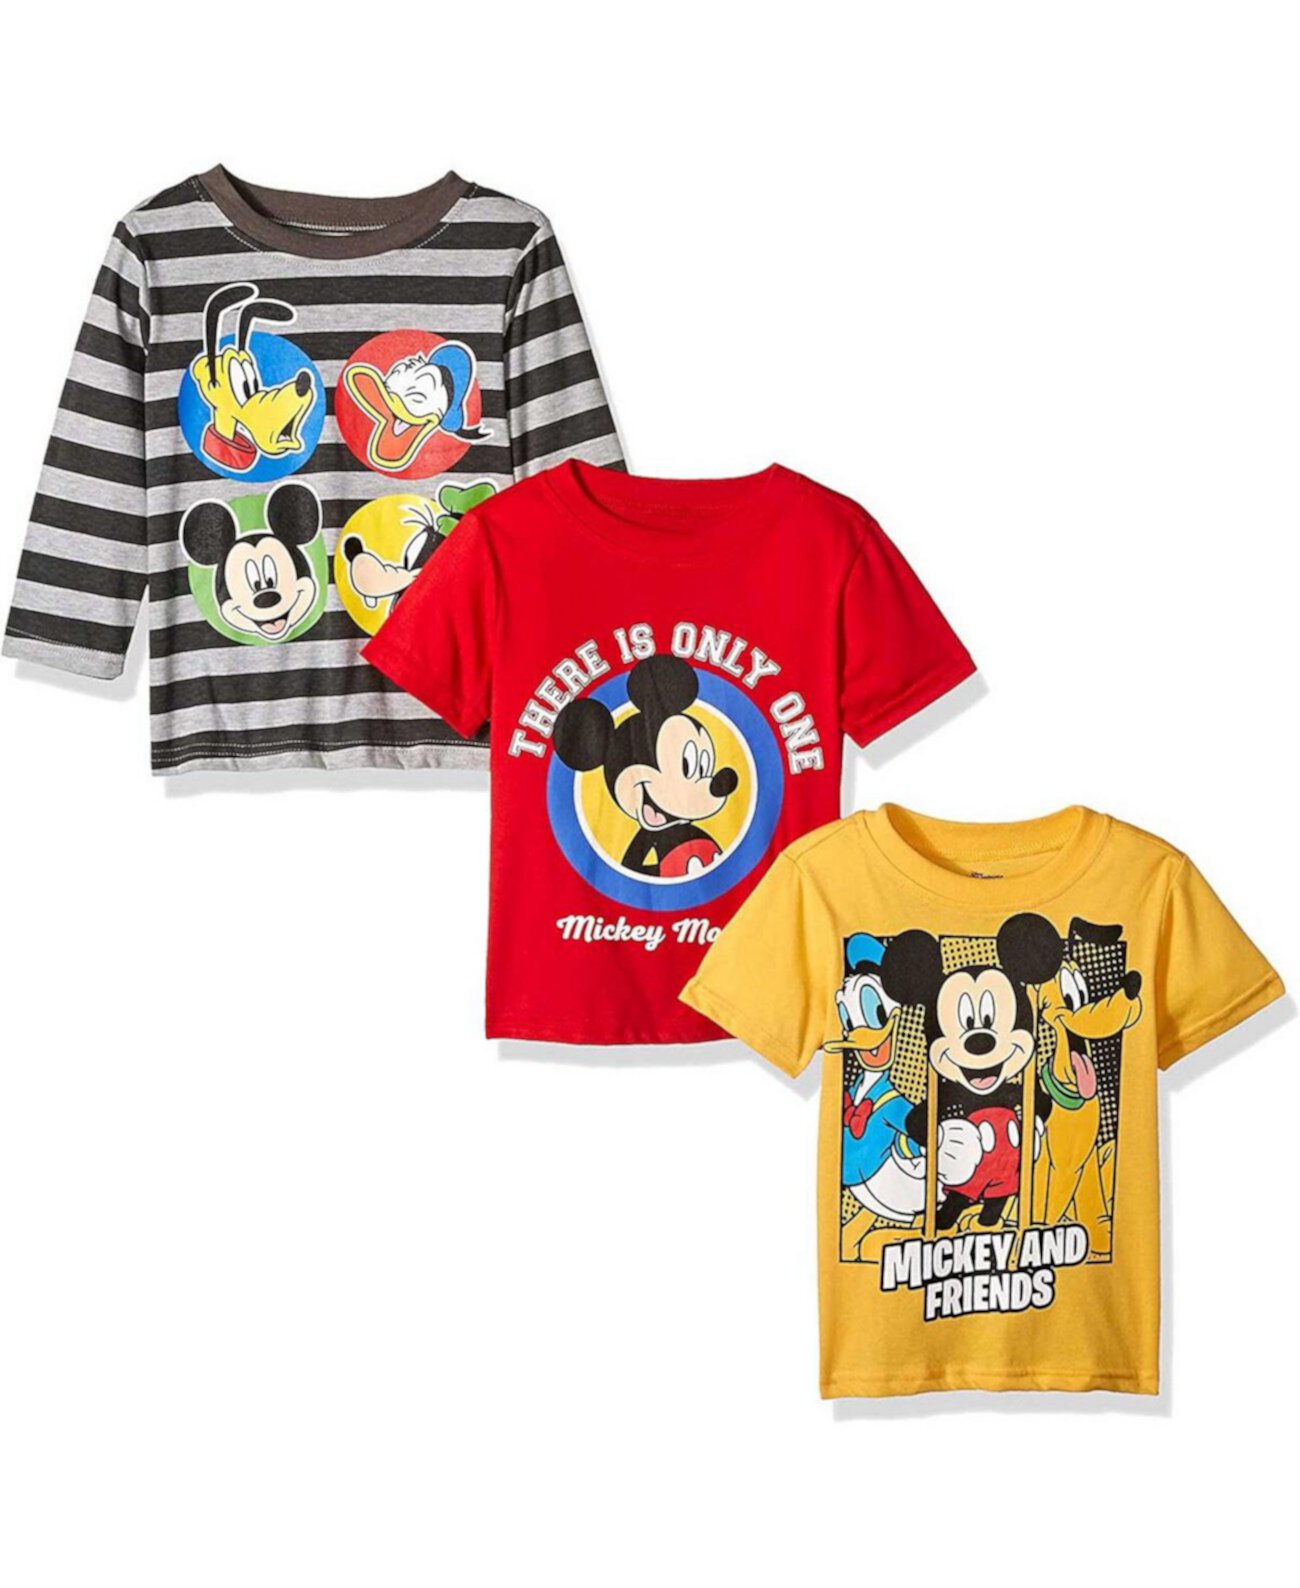 Комбинированный комплект из 3 футболок с рисунком Микки Мауса серого, красного и желтого цвета для маленьких мальчиков и девочек Children's Apparel Network